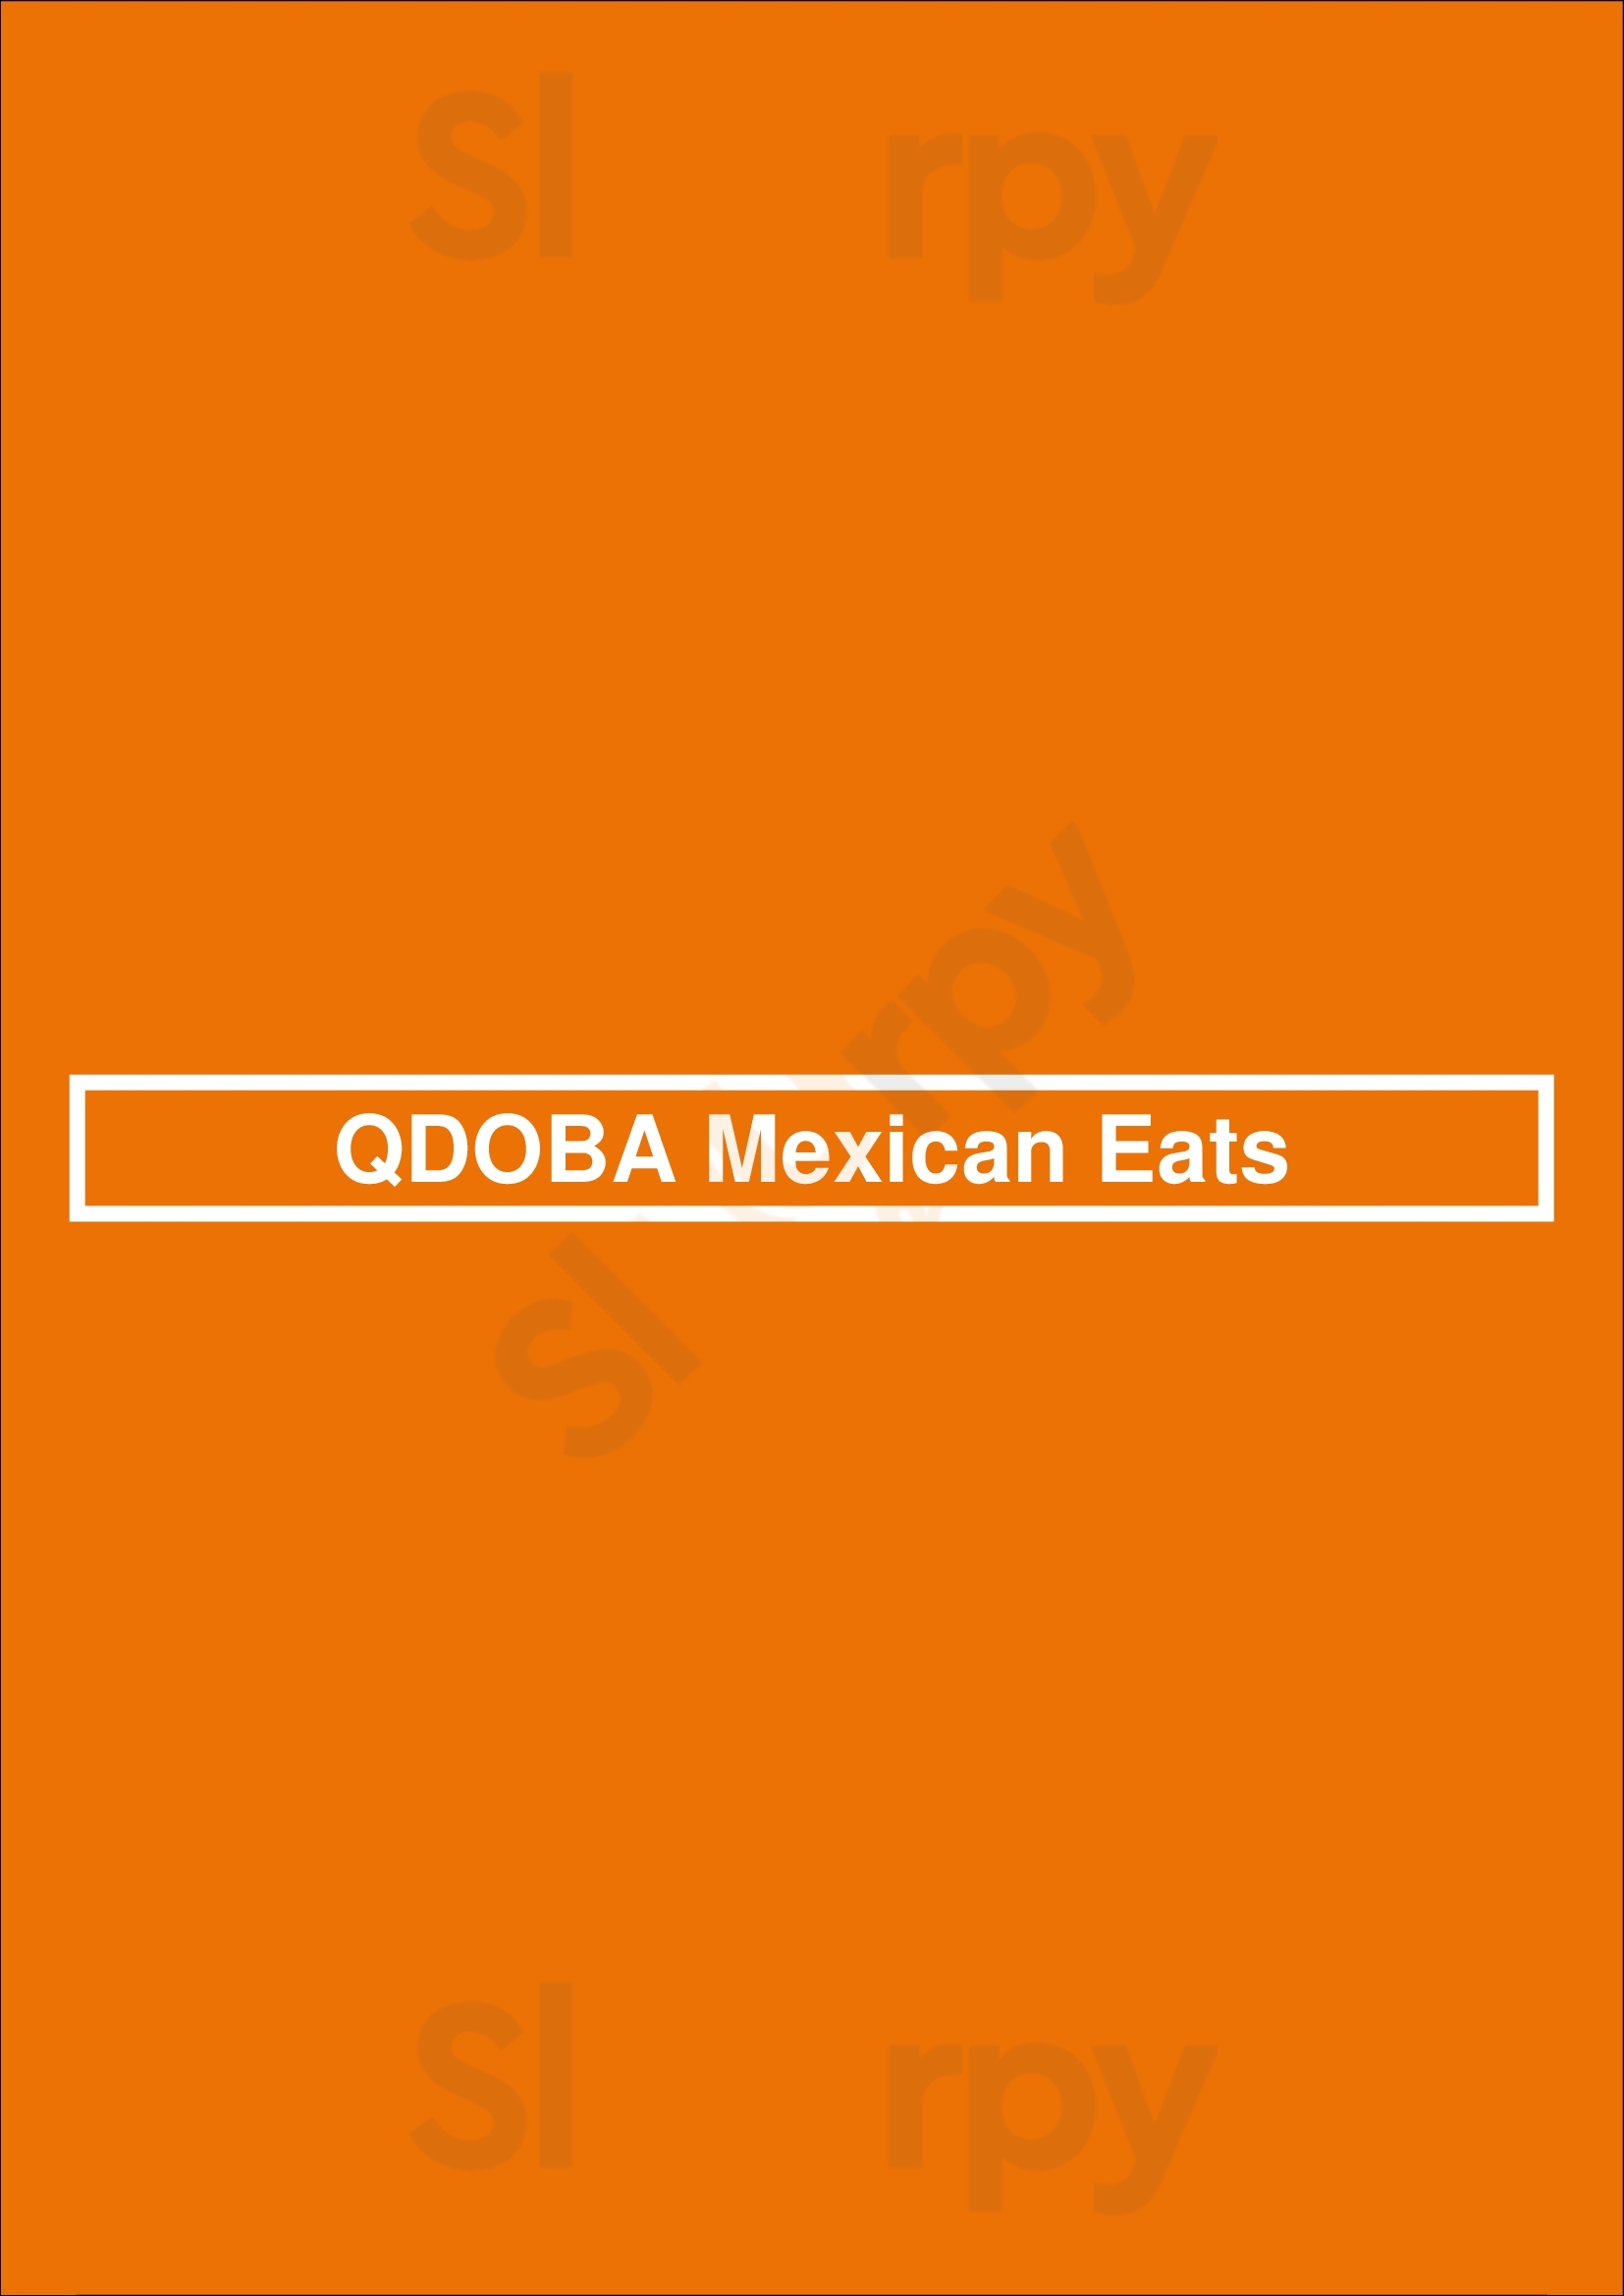 Qdoba Mexican Eats Lexington Menu - 1